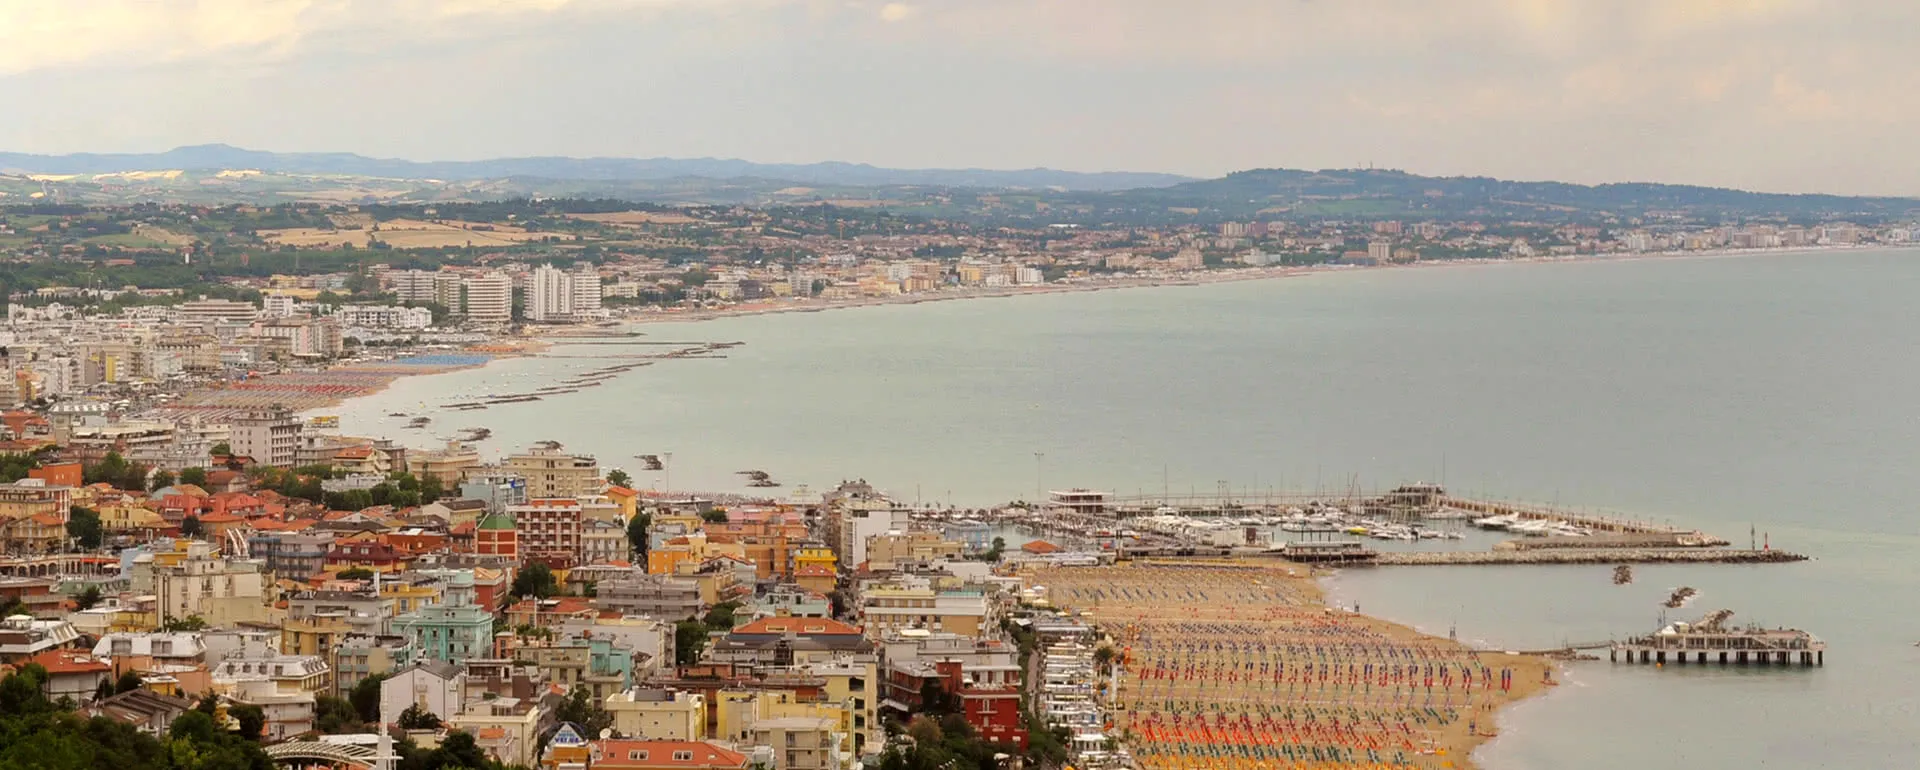 Misano Adriatico - the destination for company trips